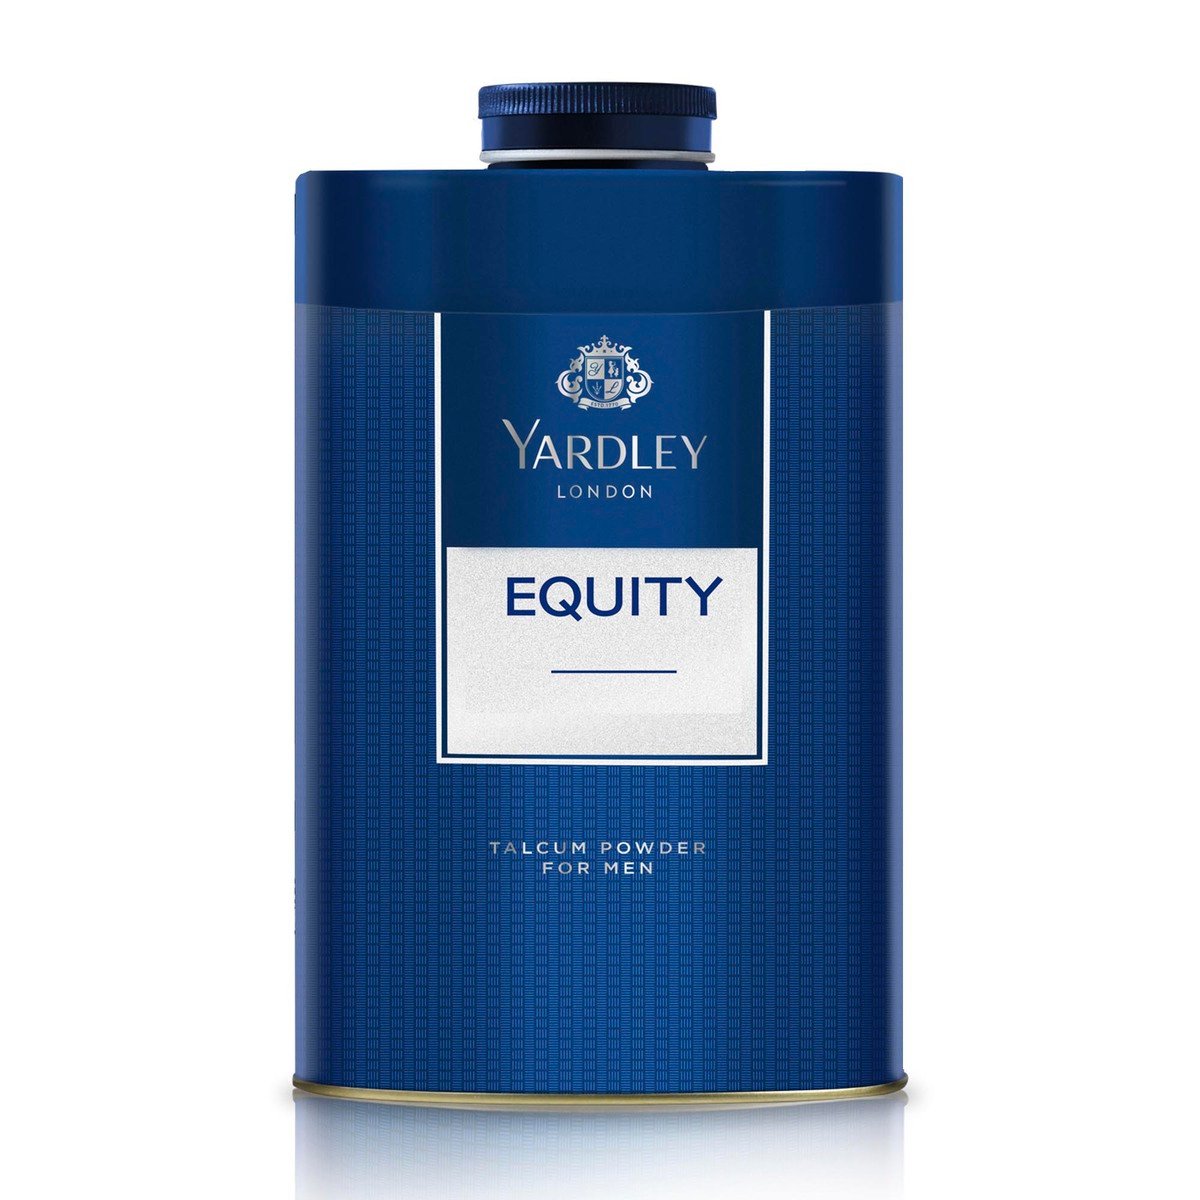 Yardley Equity Talcum Powder For Men 250g